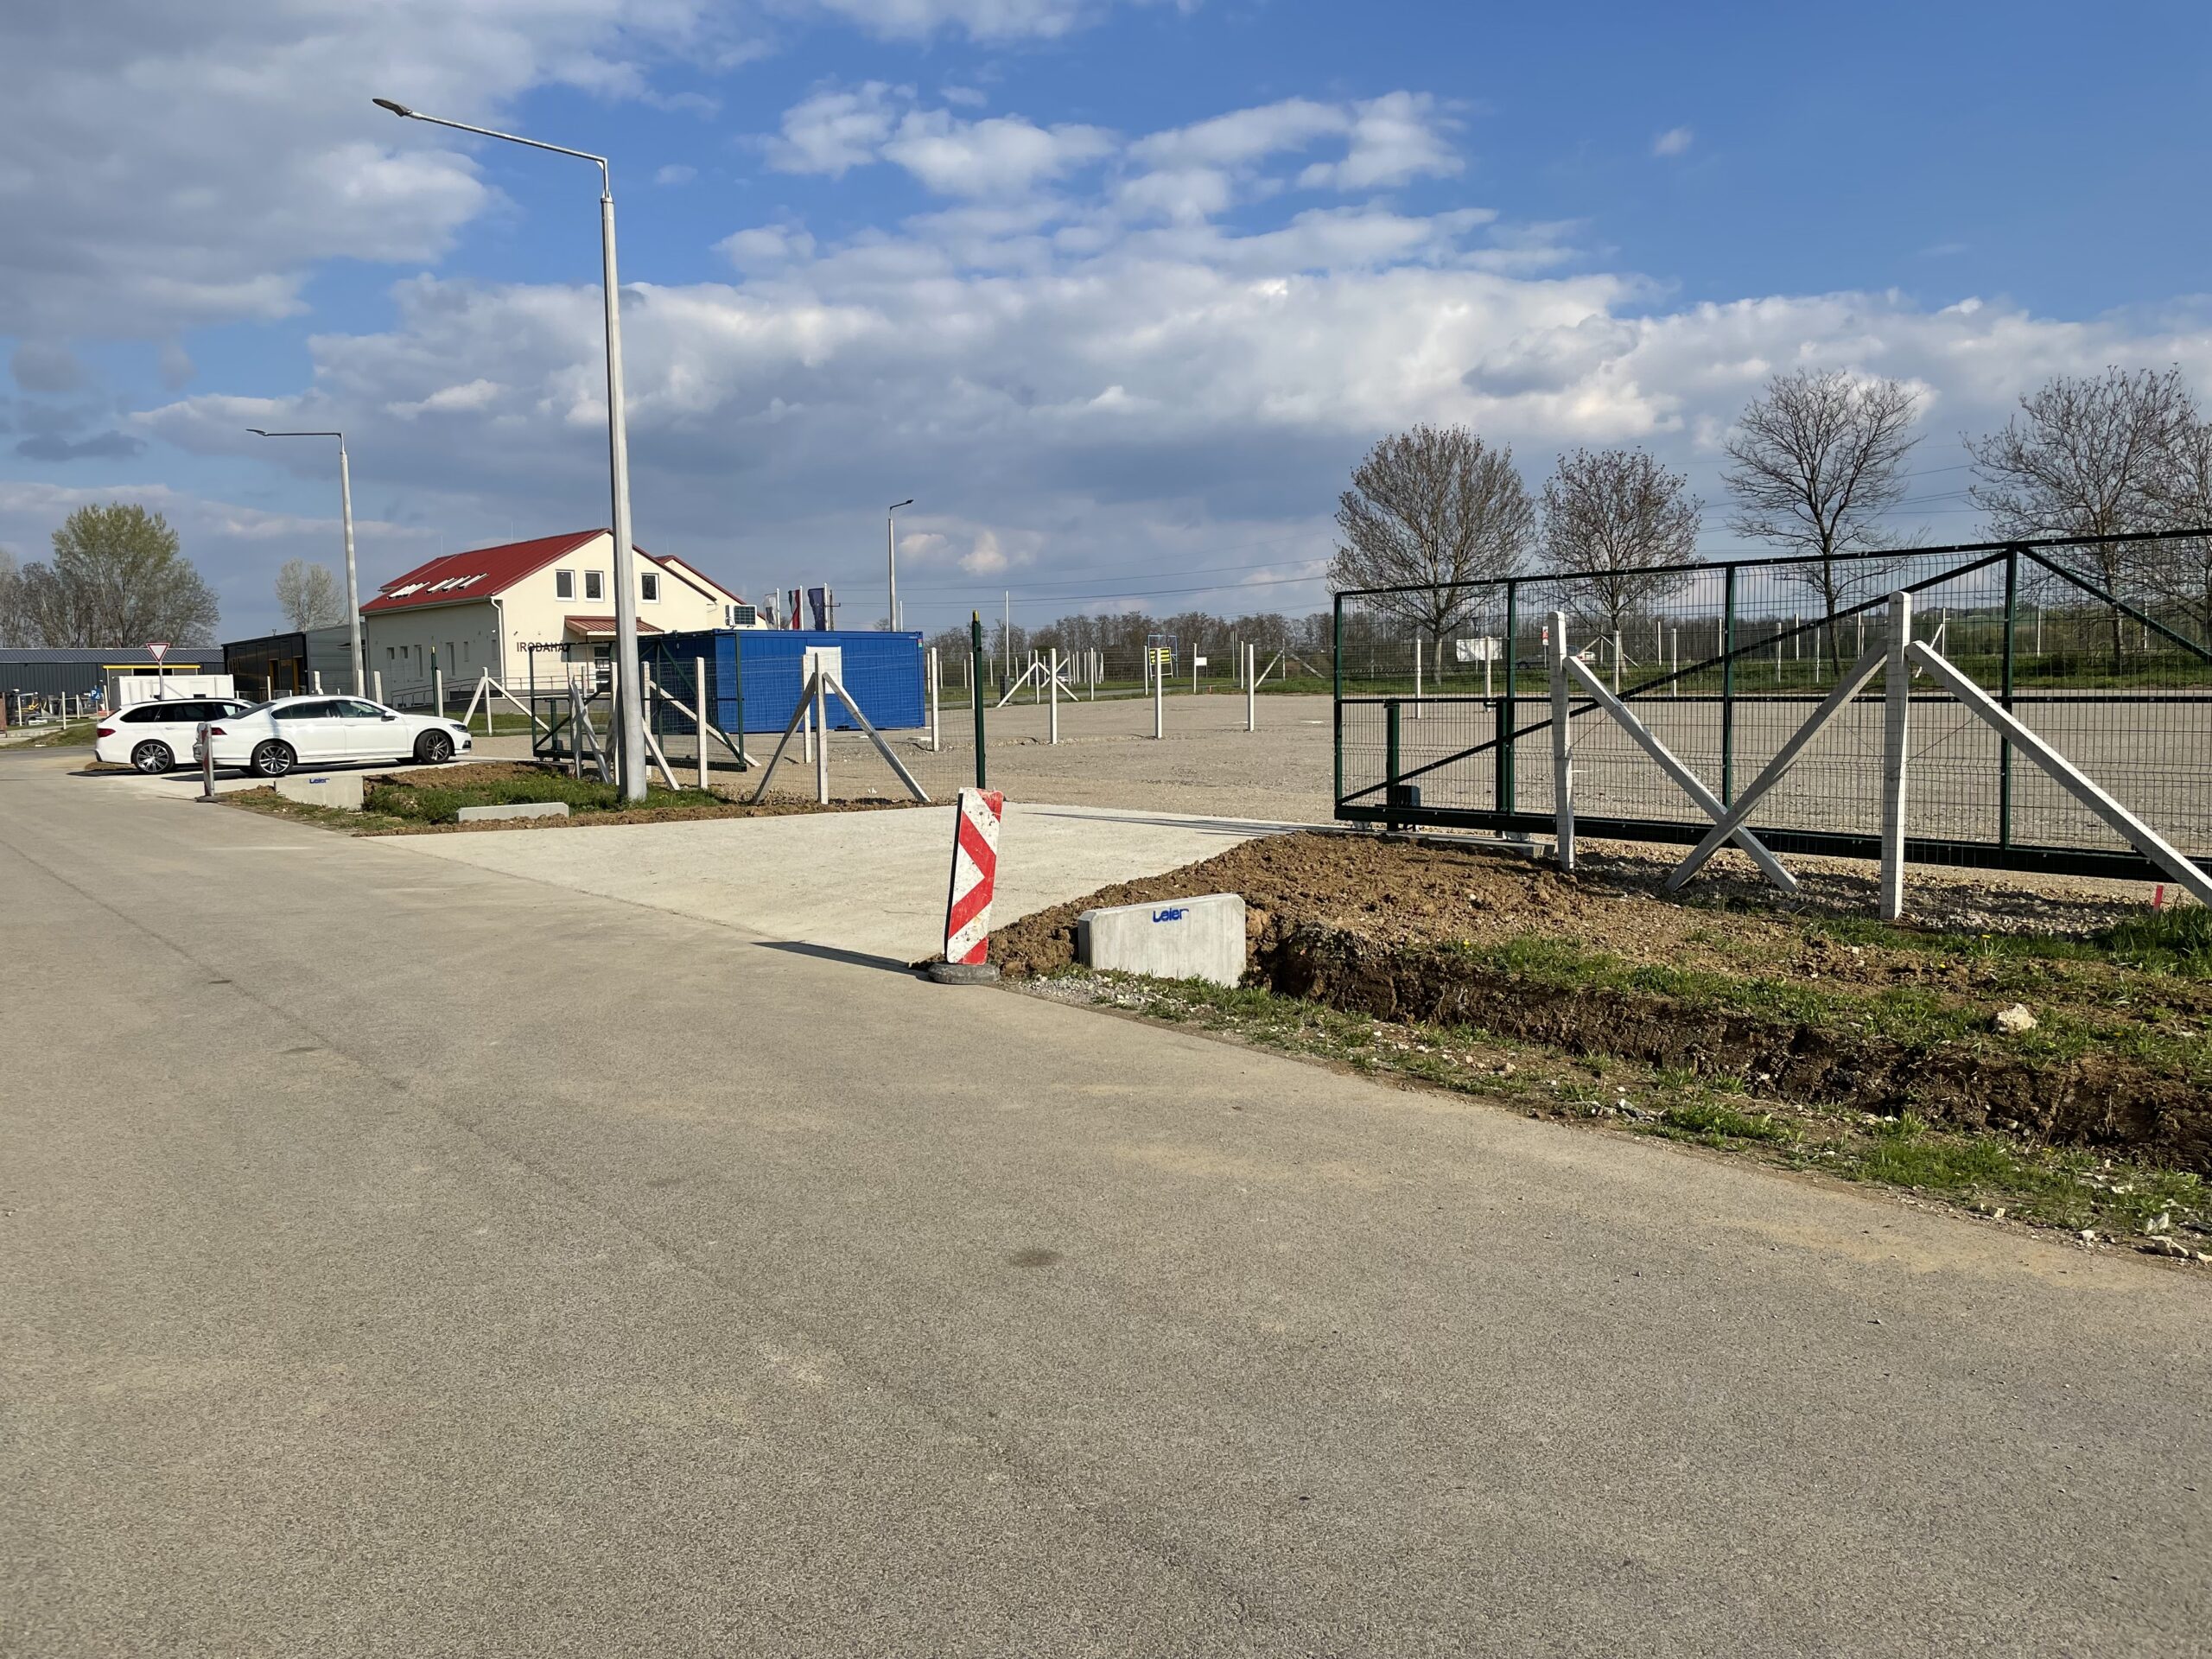 Kiadó sík fekvésű iparterület Pécs mellett, attól 4km-re, teljes közművel.